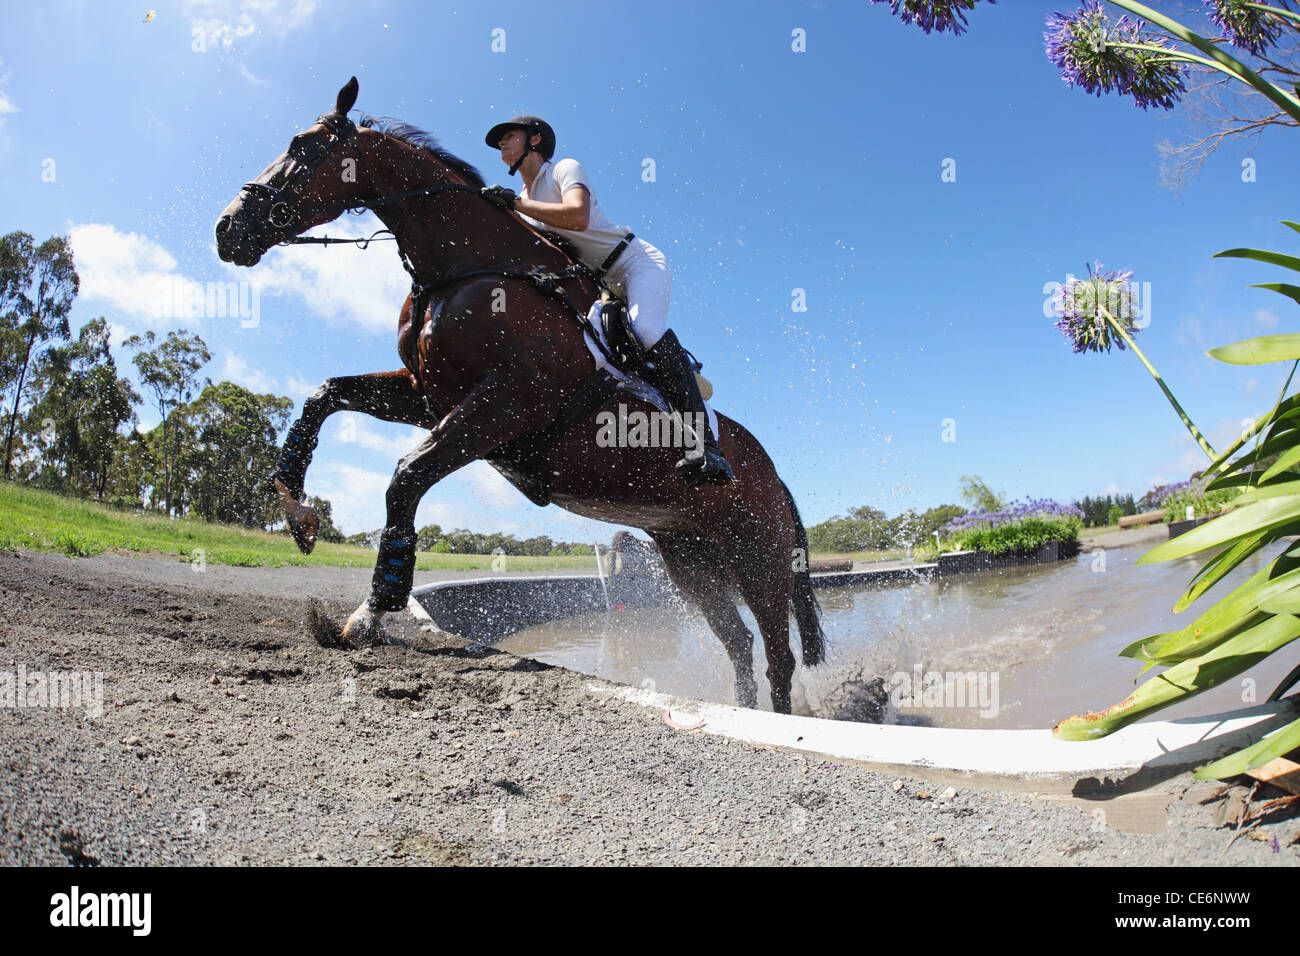 Reiter über Wasser im Pferdesport-Event Stockfoto